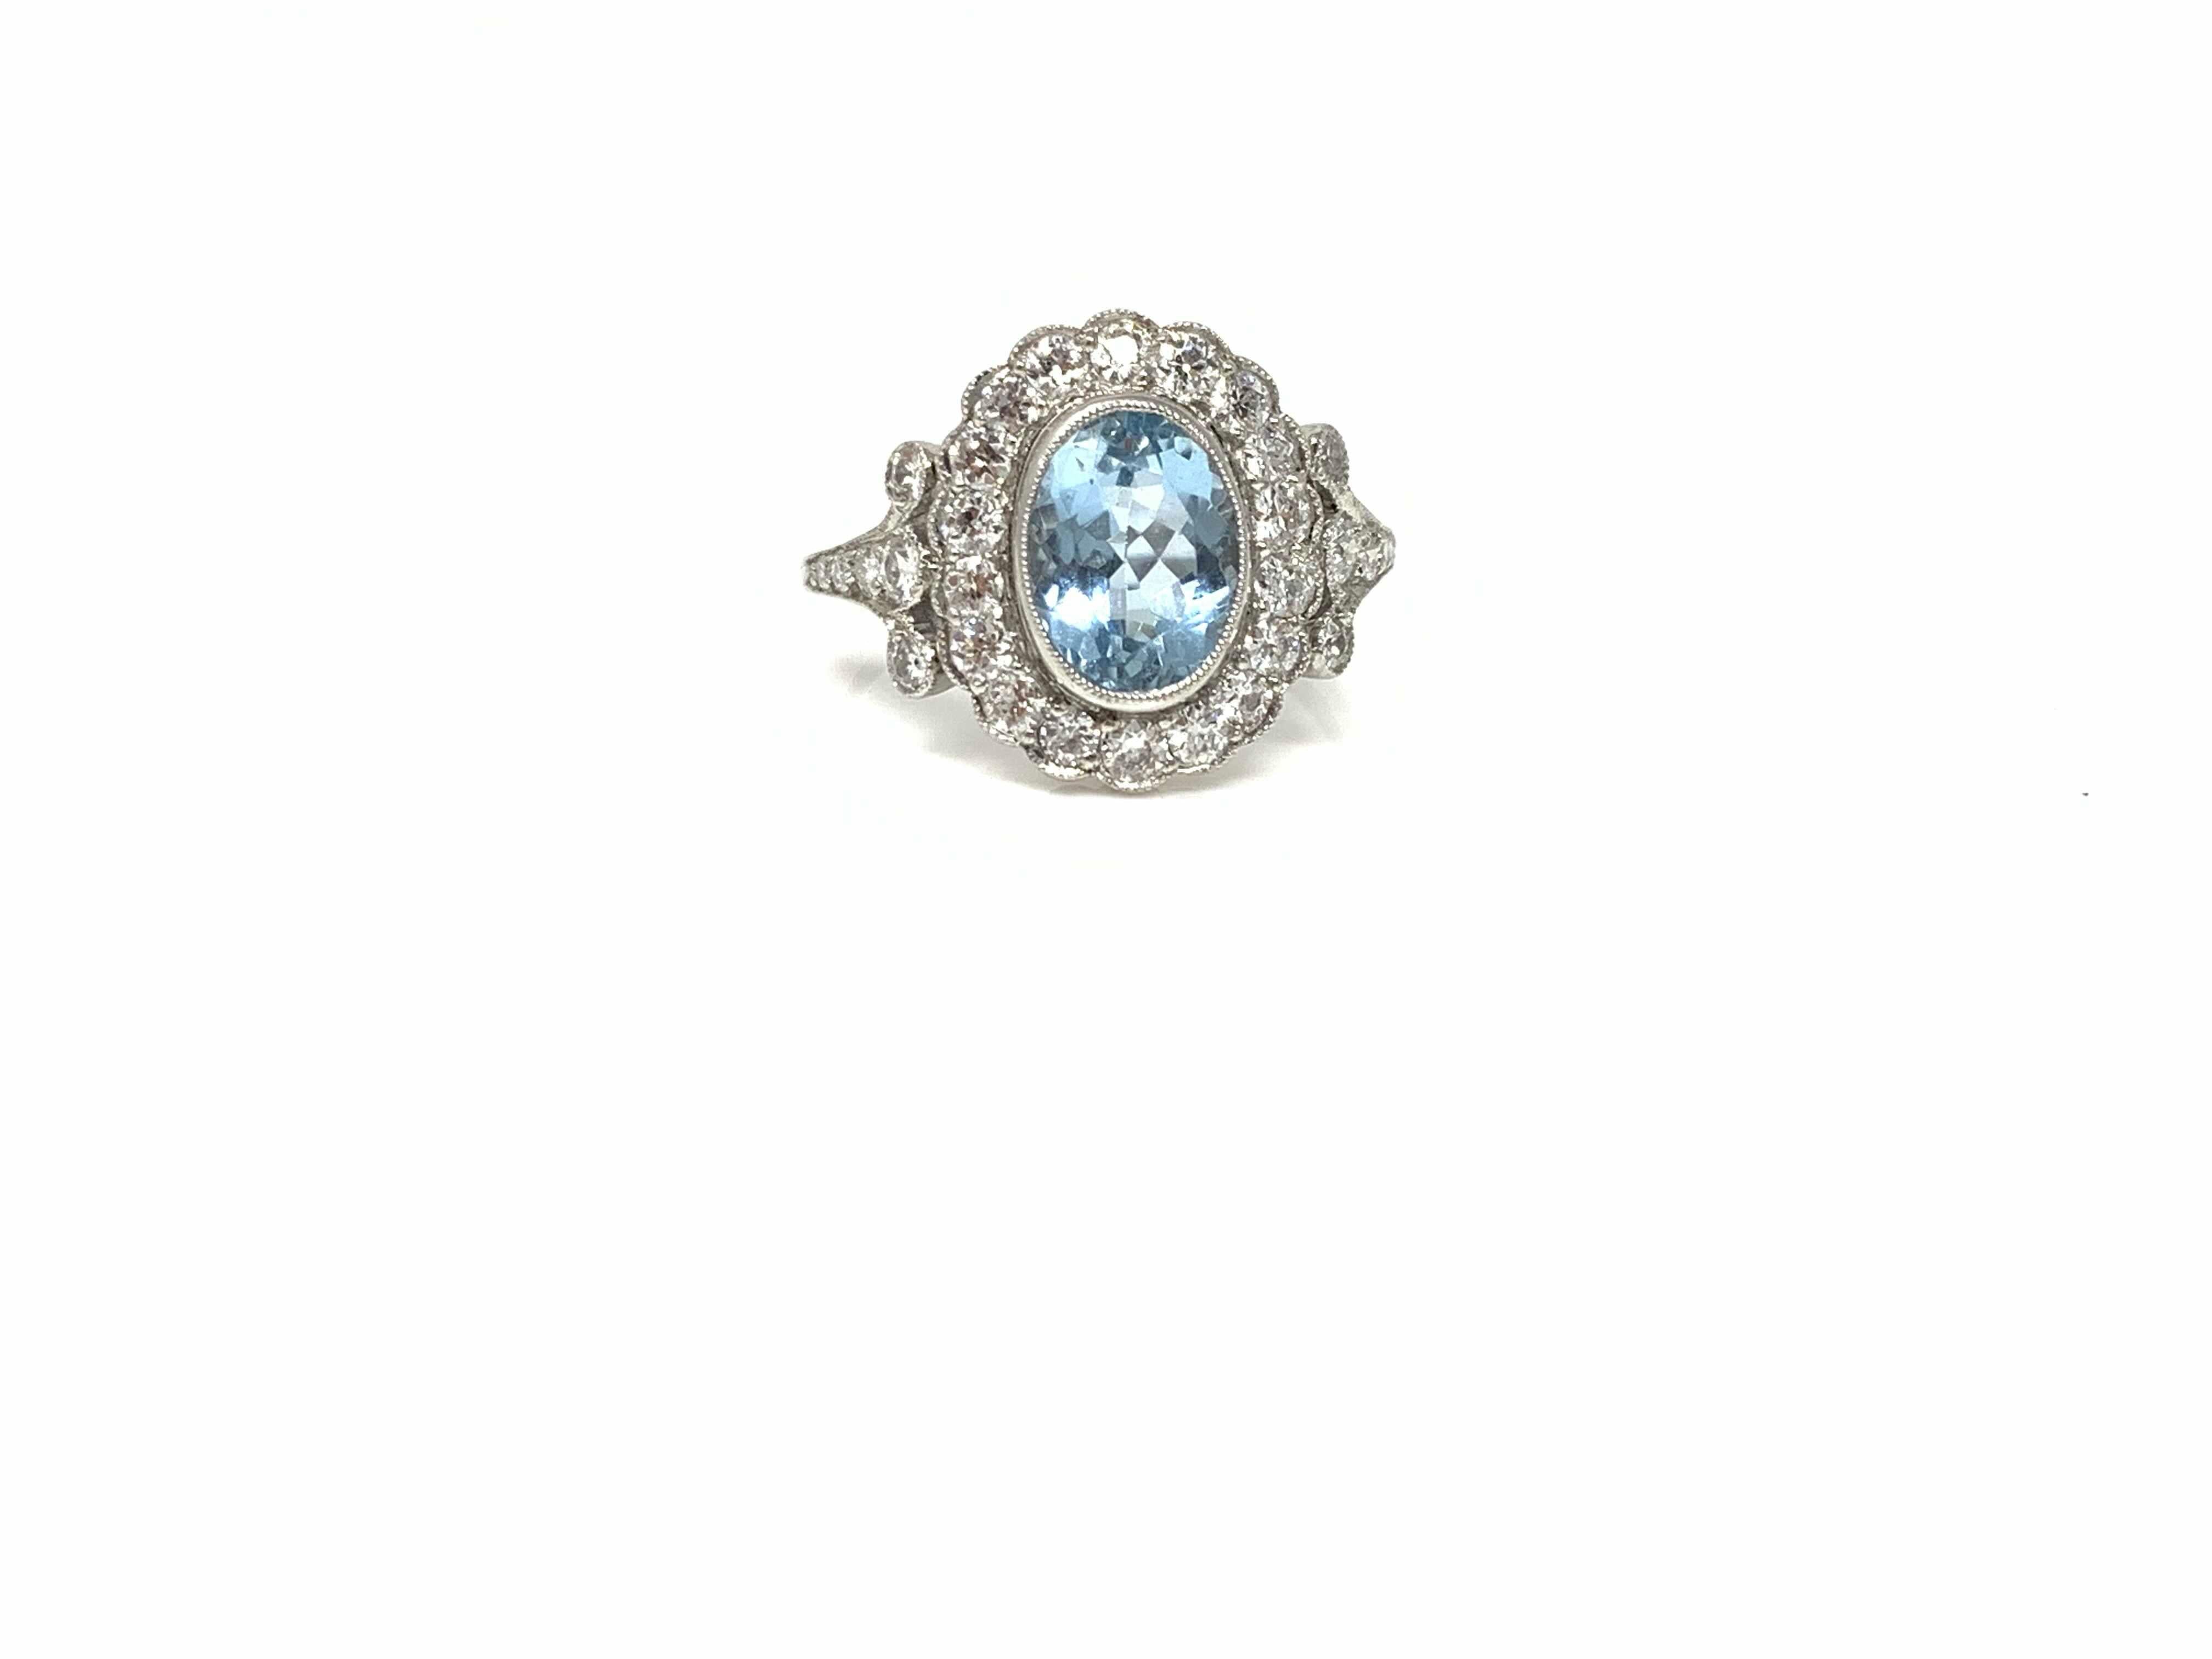 Oval Cut White Round Brilliant Diamond and Aquamarine Ring in Platinum